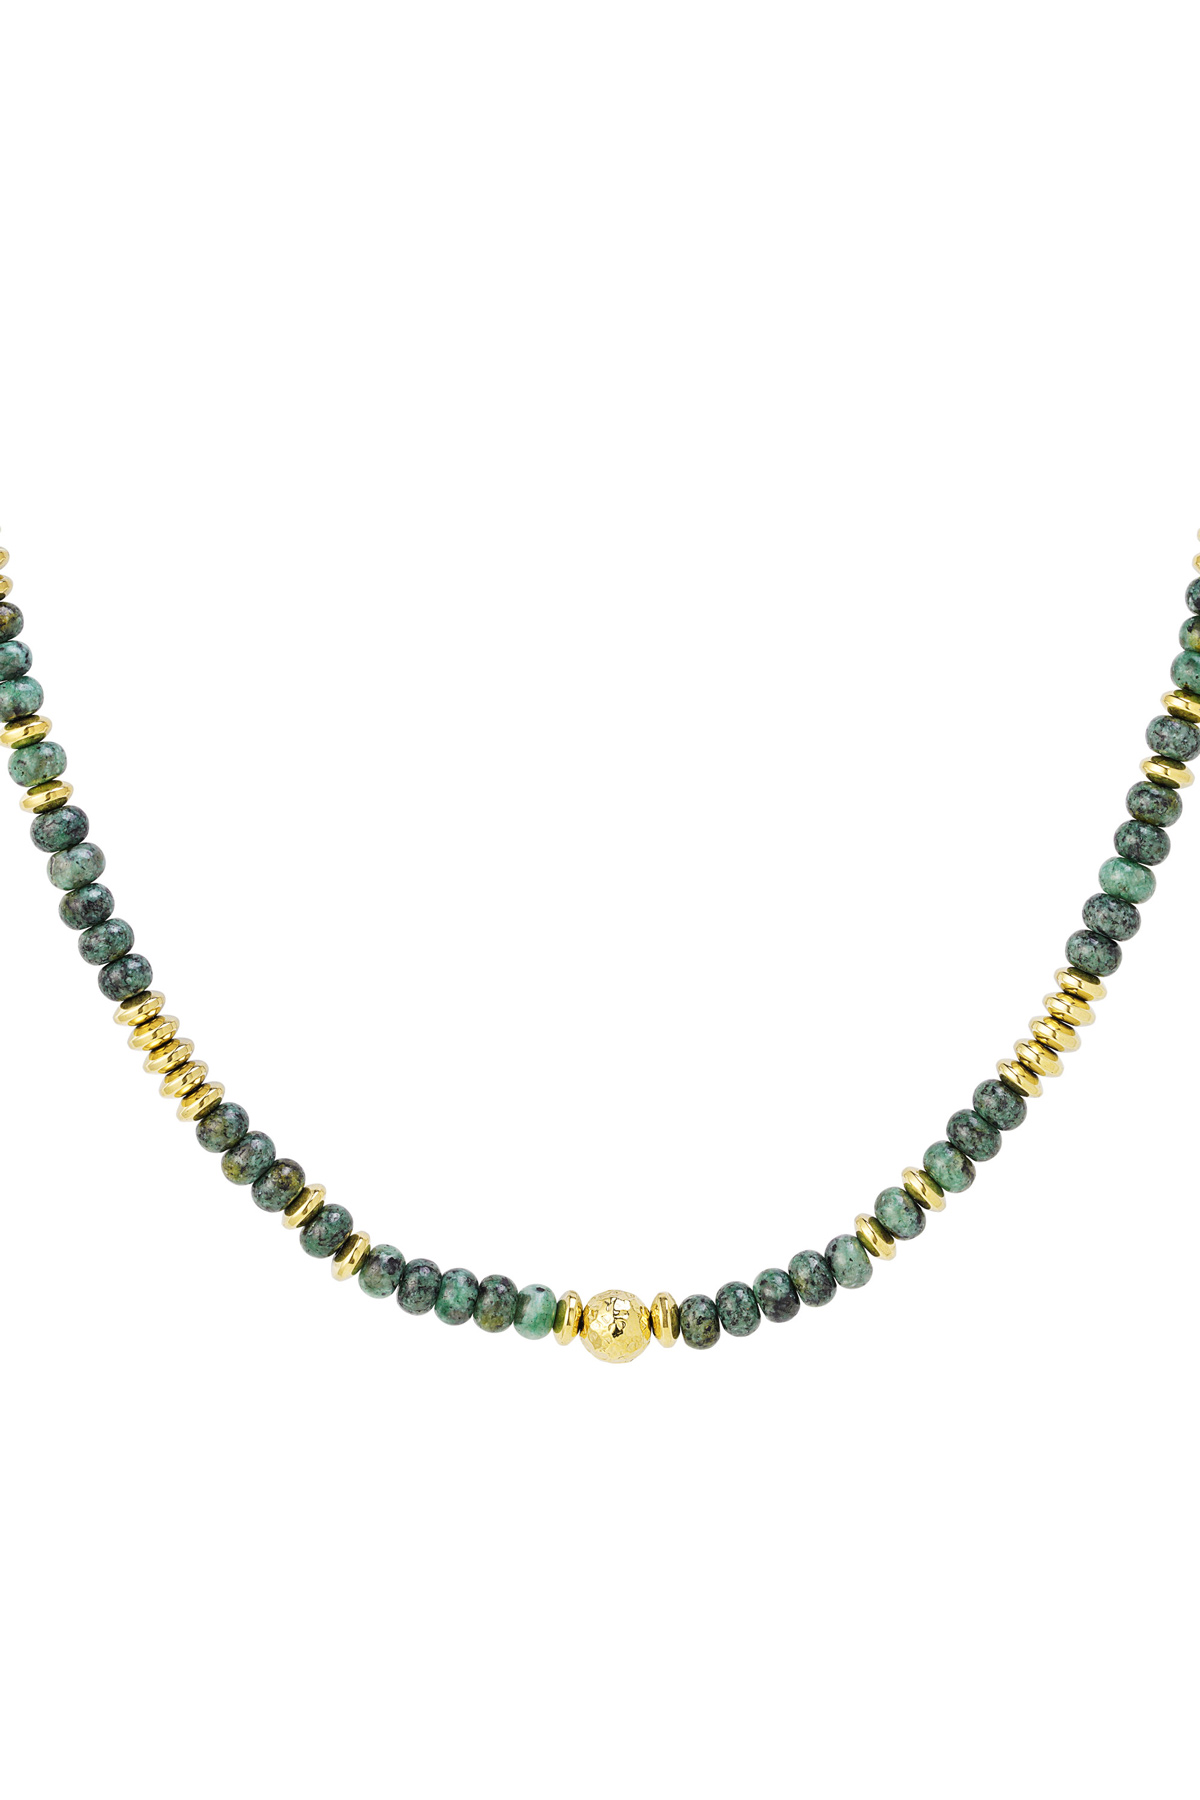 Halskette mit mehrfarbigen Steinperlen - Natursteinkollektion Grün &amp; Gold Hämatit